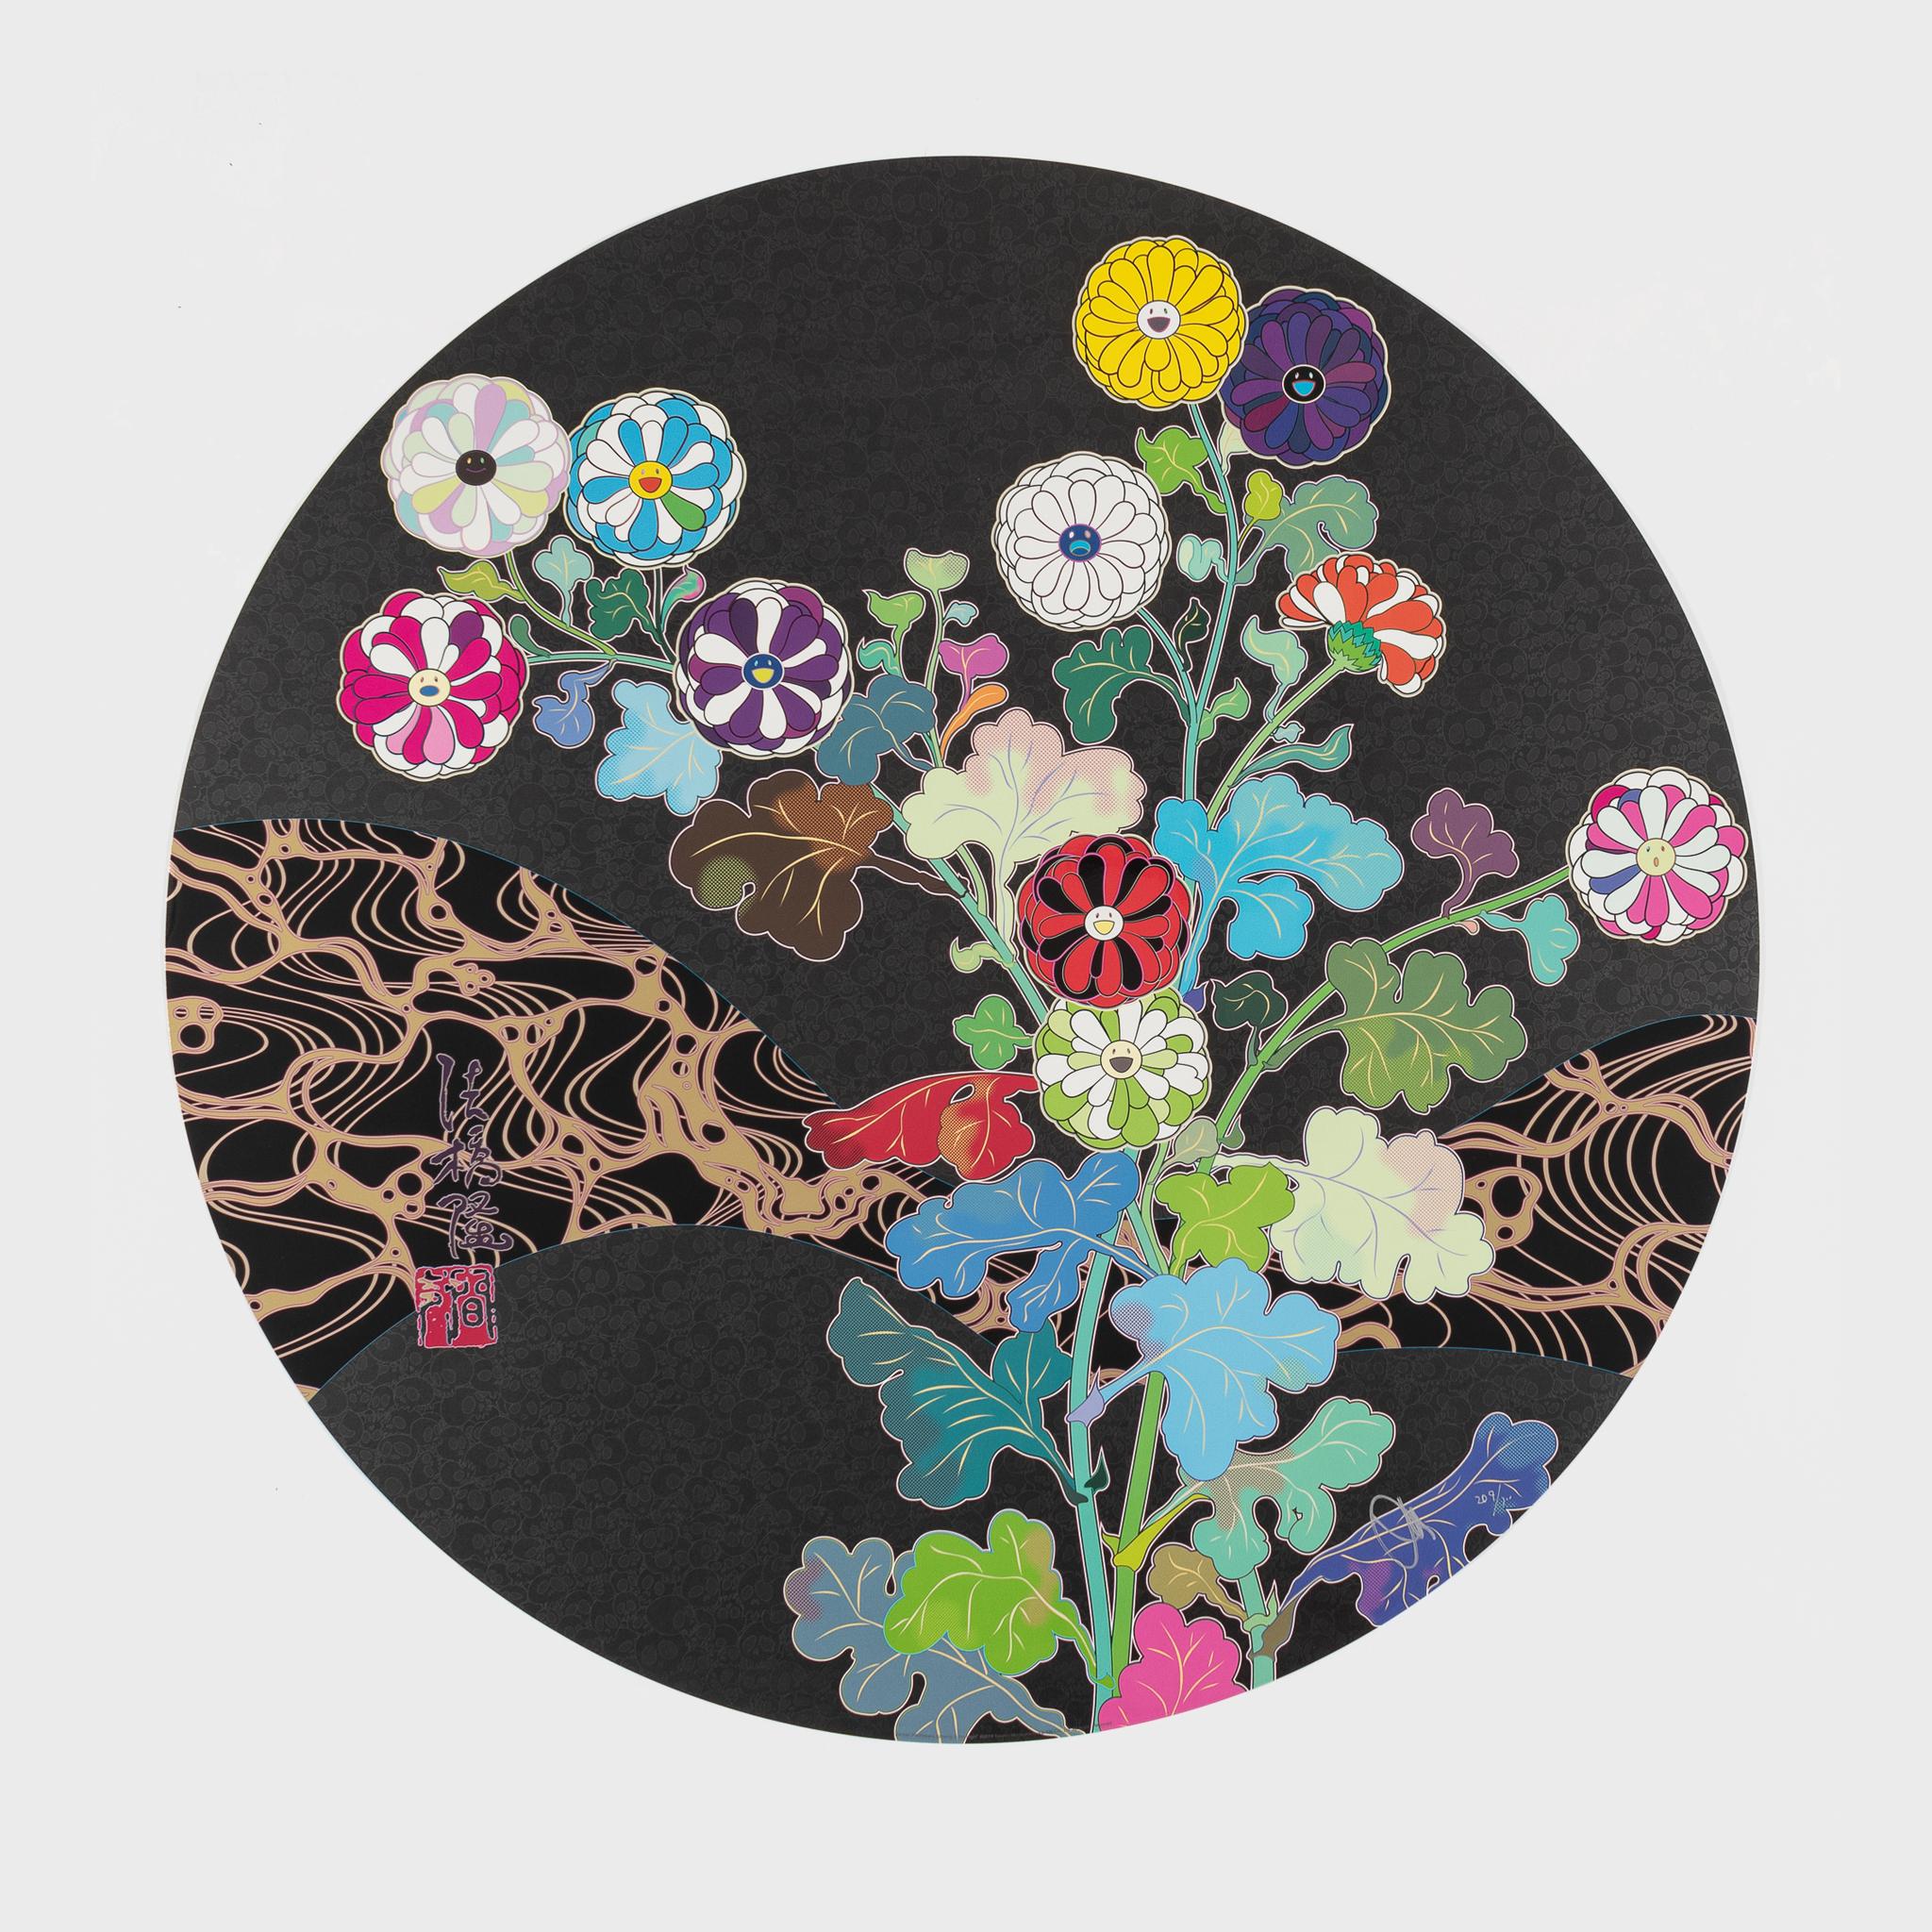 Takashi Murakami Abstract Print – Kansei: Wildblumen leuchten in der Nacht